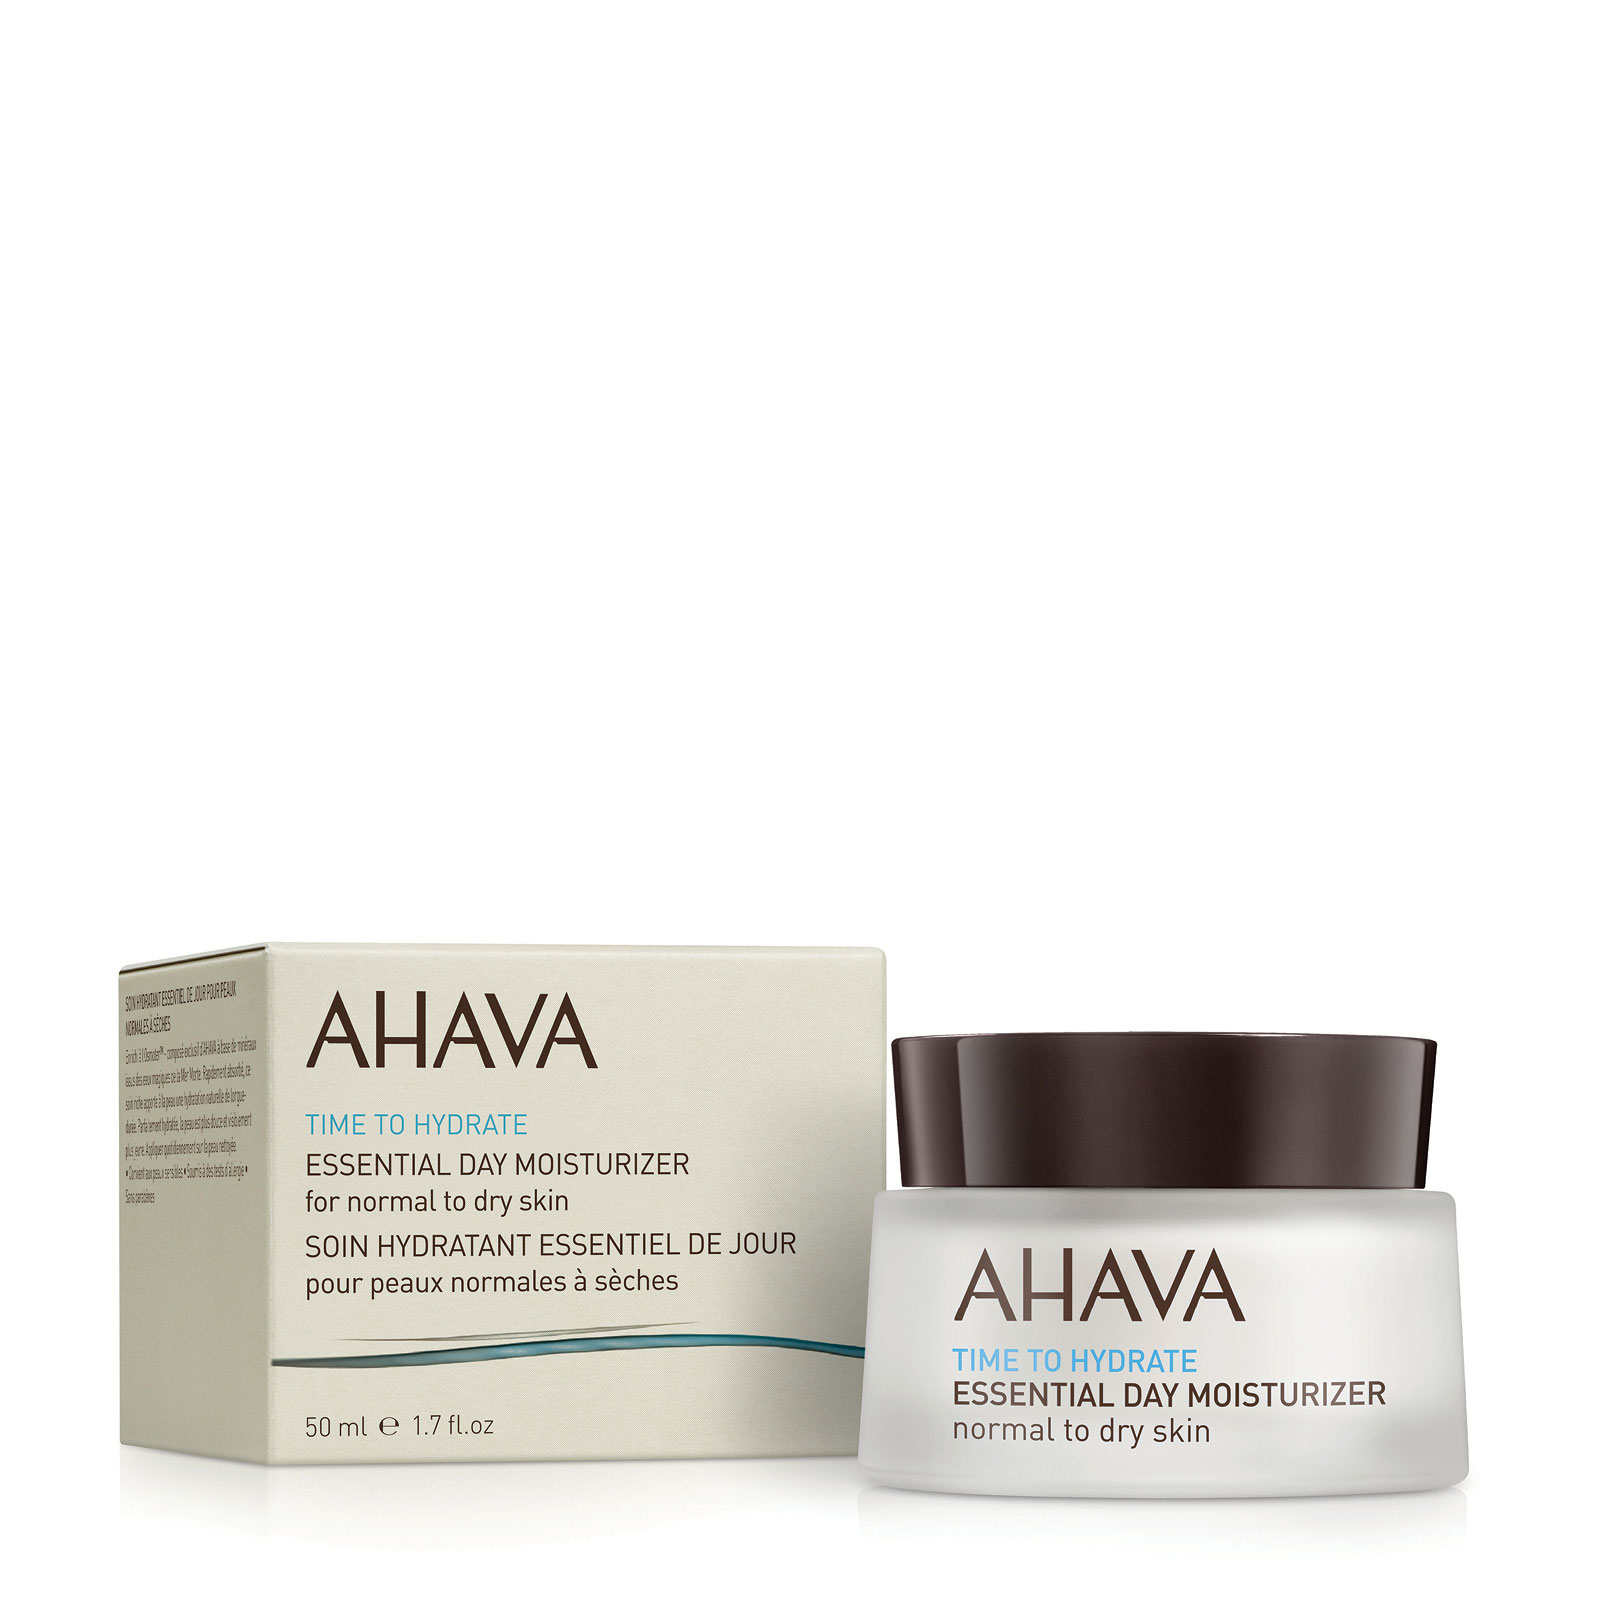 AHAVA 精致水润保湿日霜 50ml 适合正常及偏干性肌肤